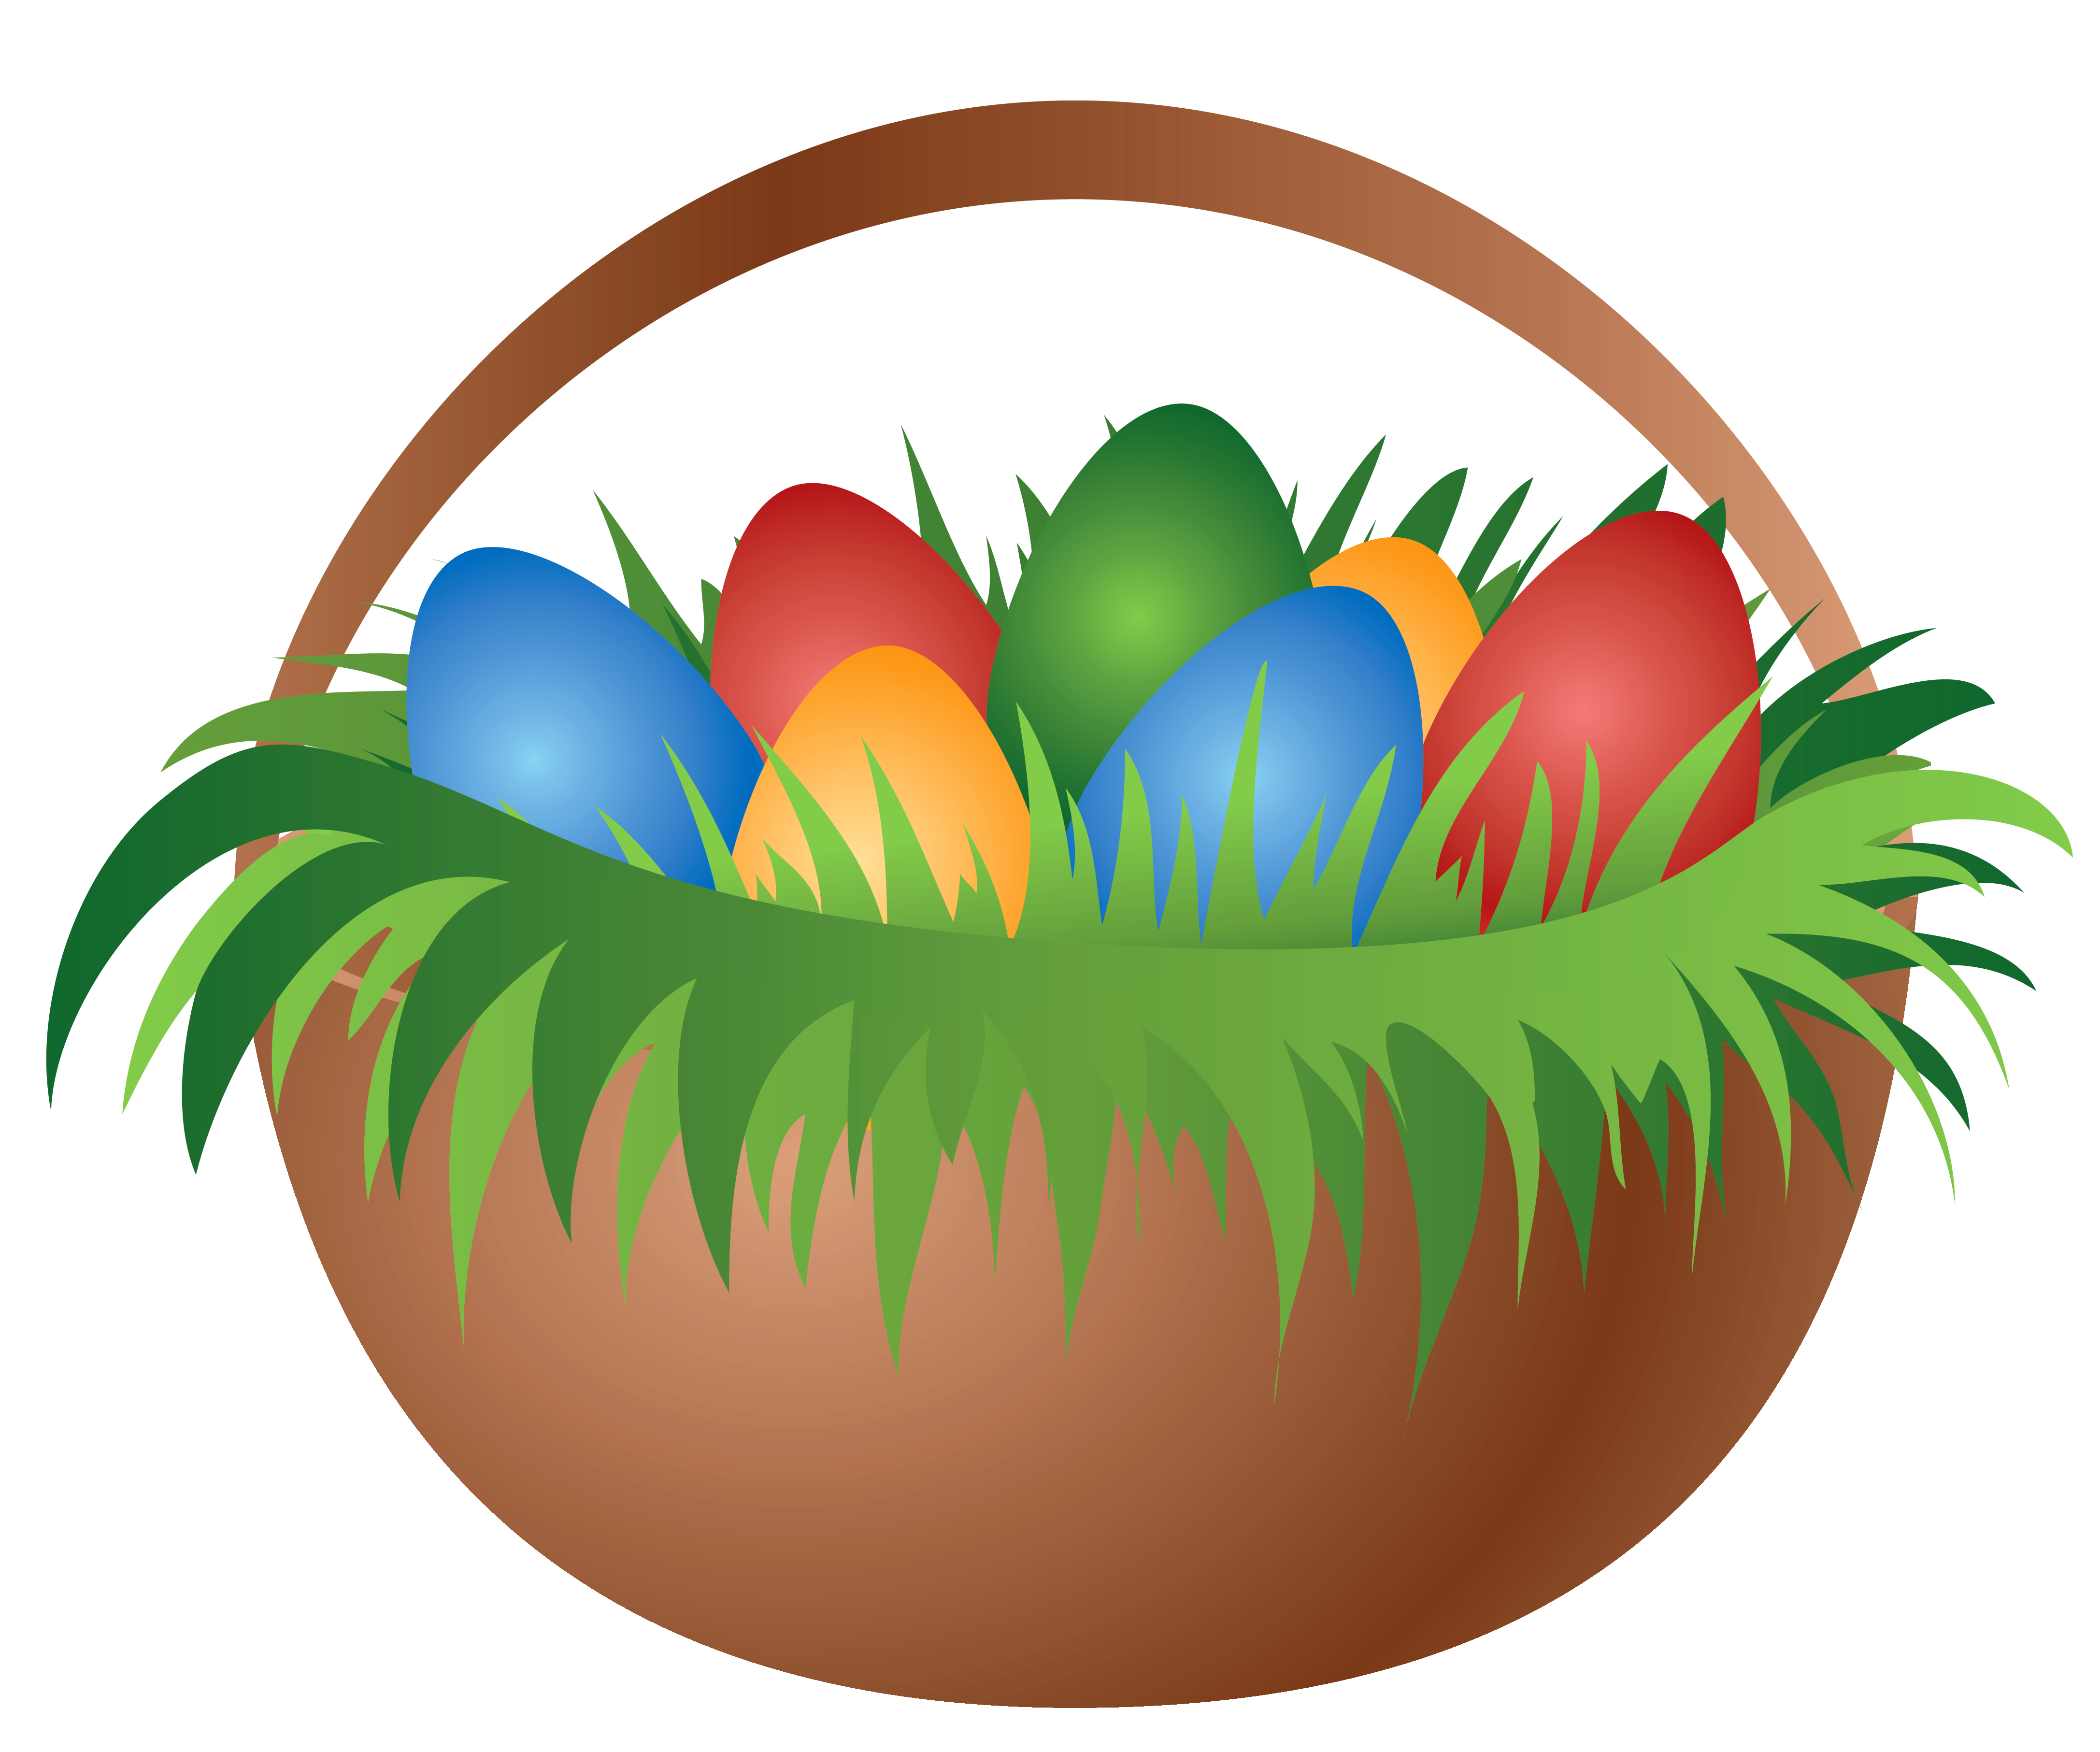 Easter Bucket